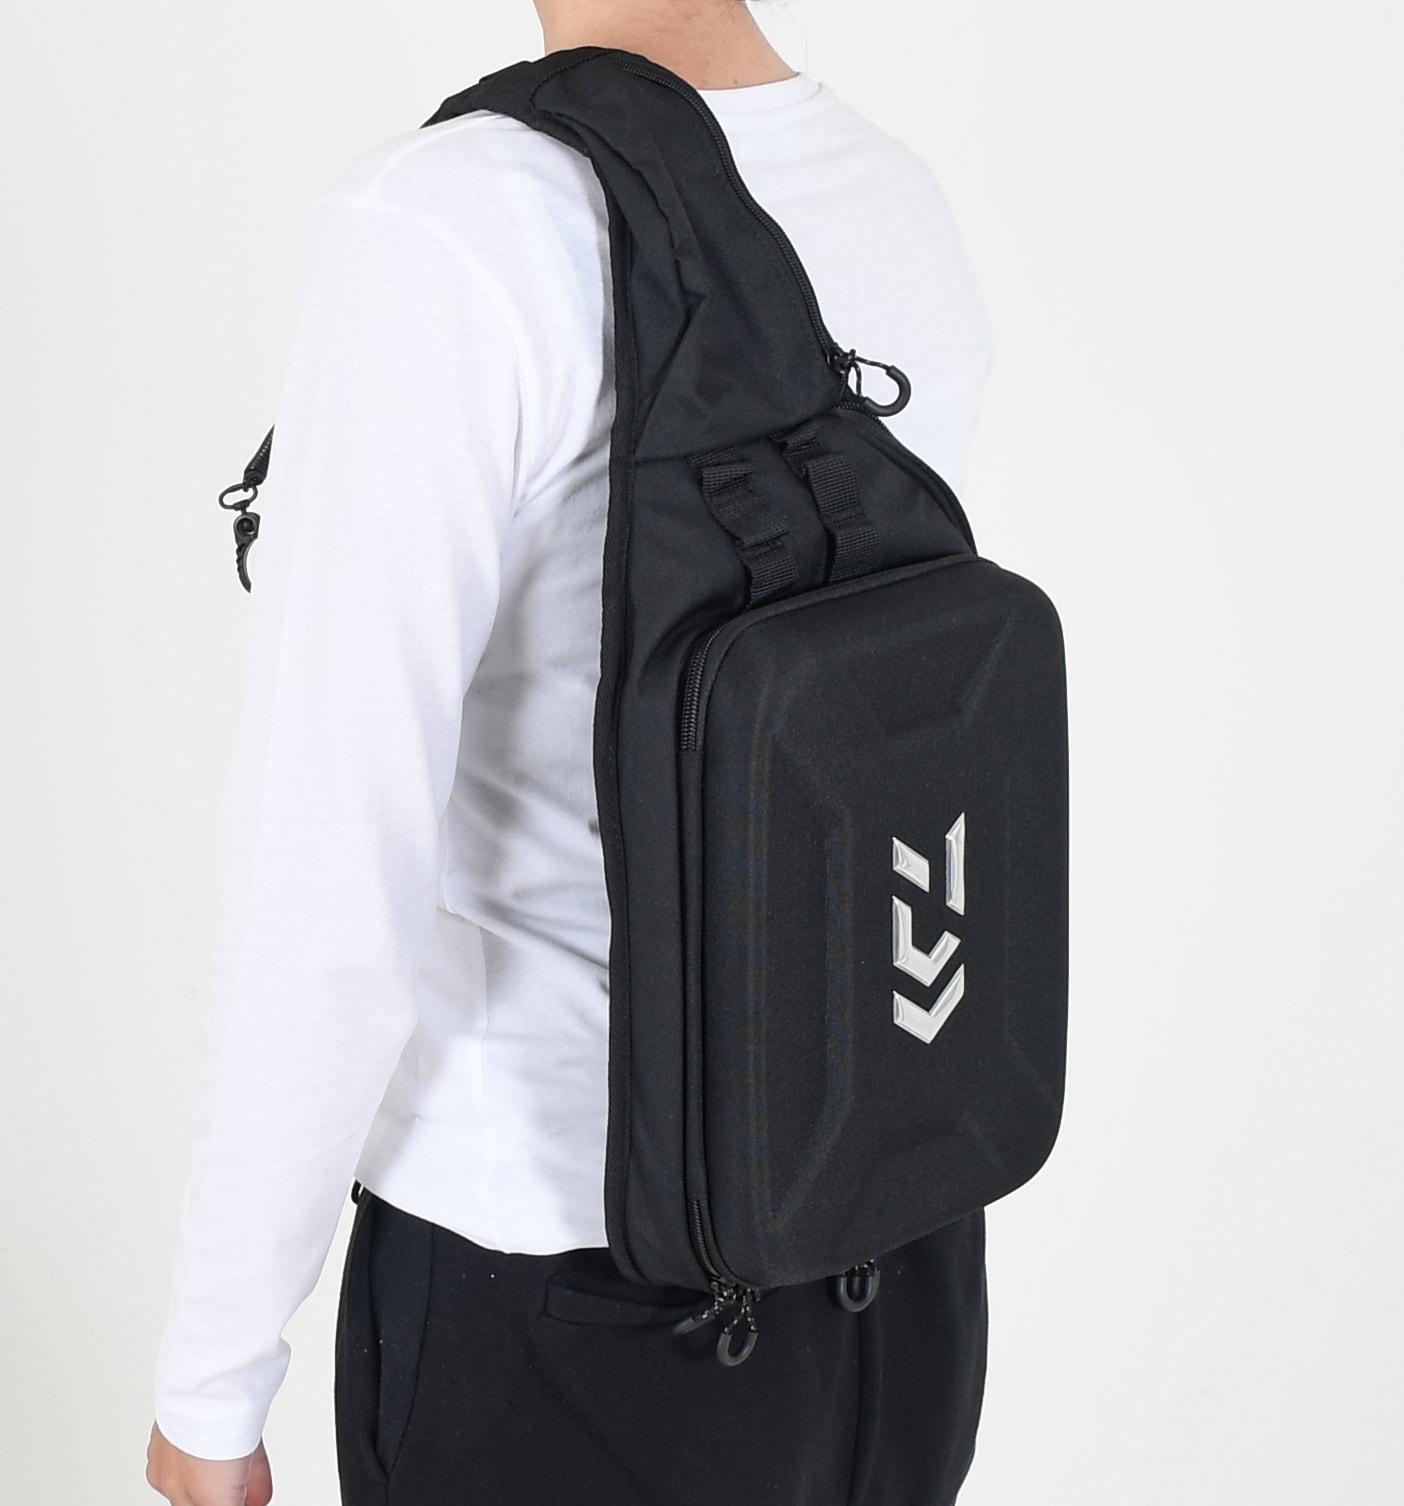 KFT DAIWA Fishing Bag Beg pancing Beg Mancing Beg Daiwa Sling Bag Crossbody  Bag Waterproof Black